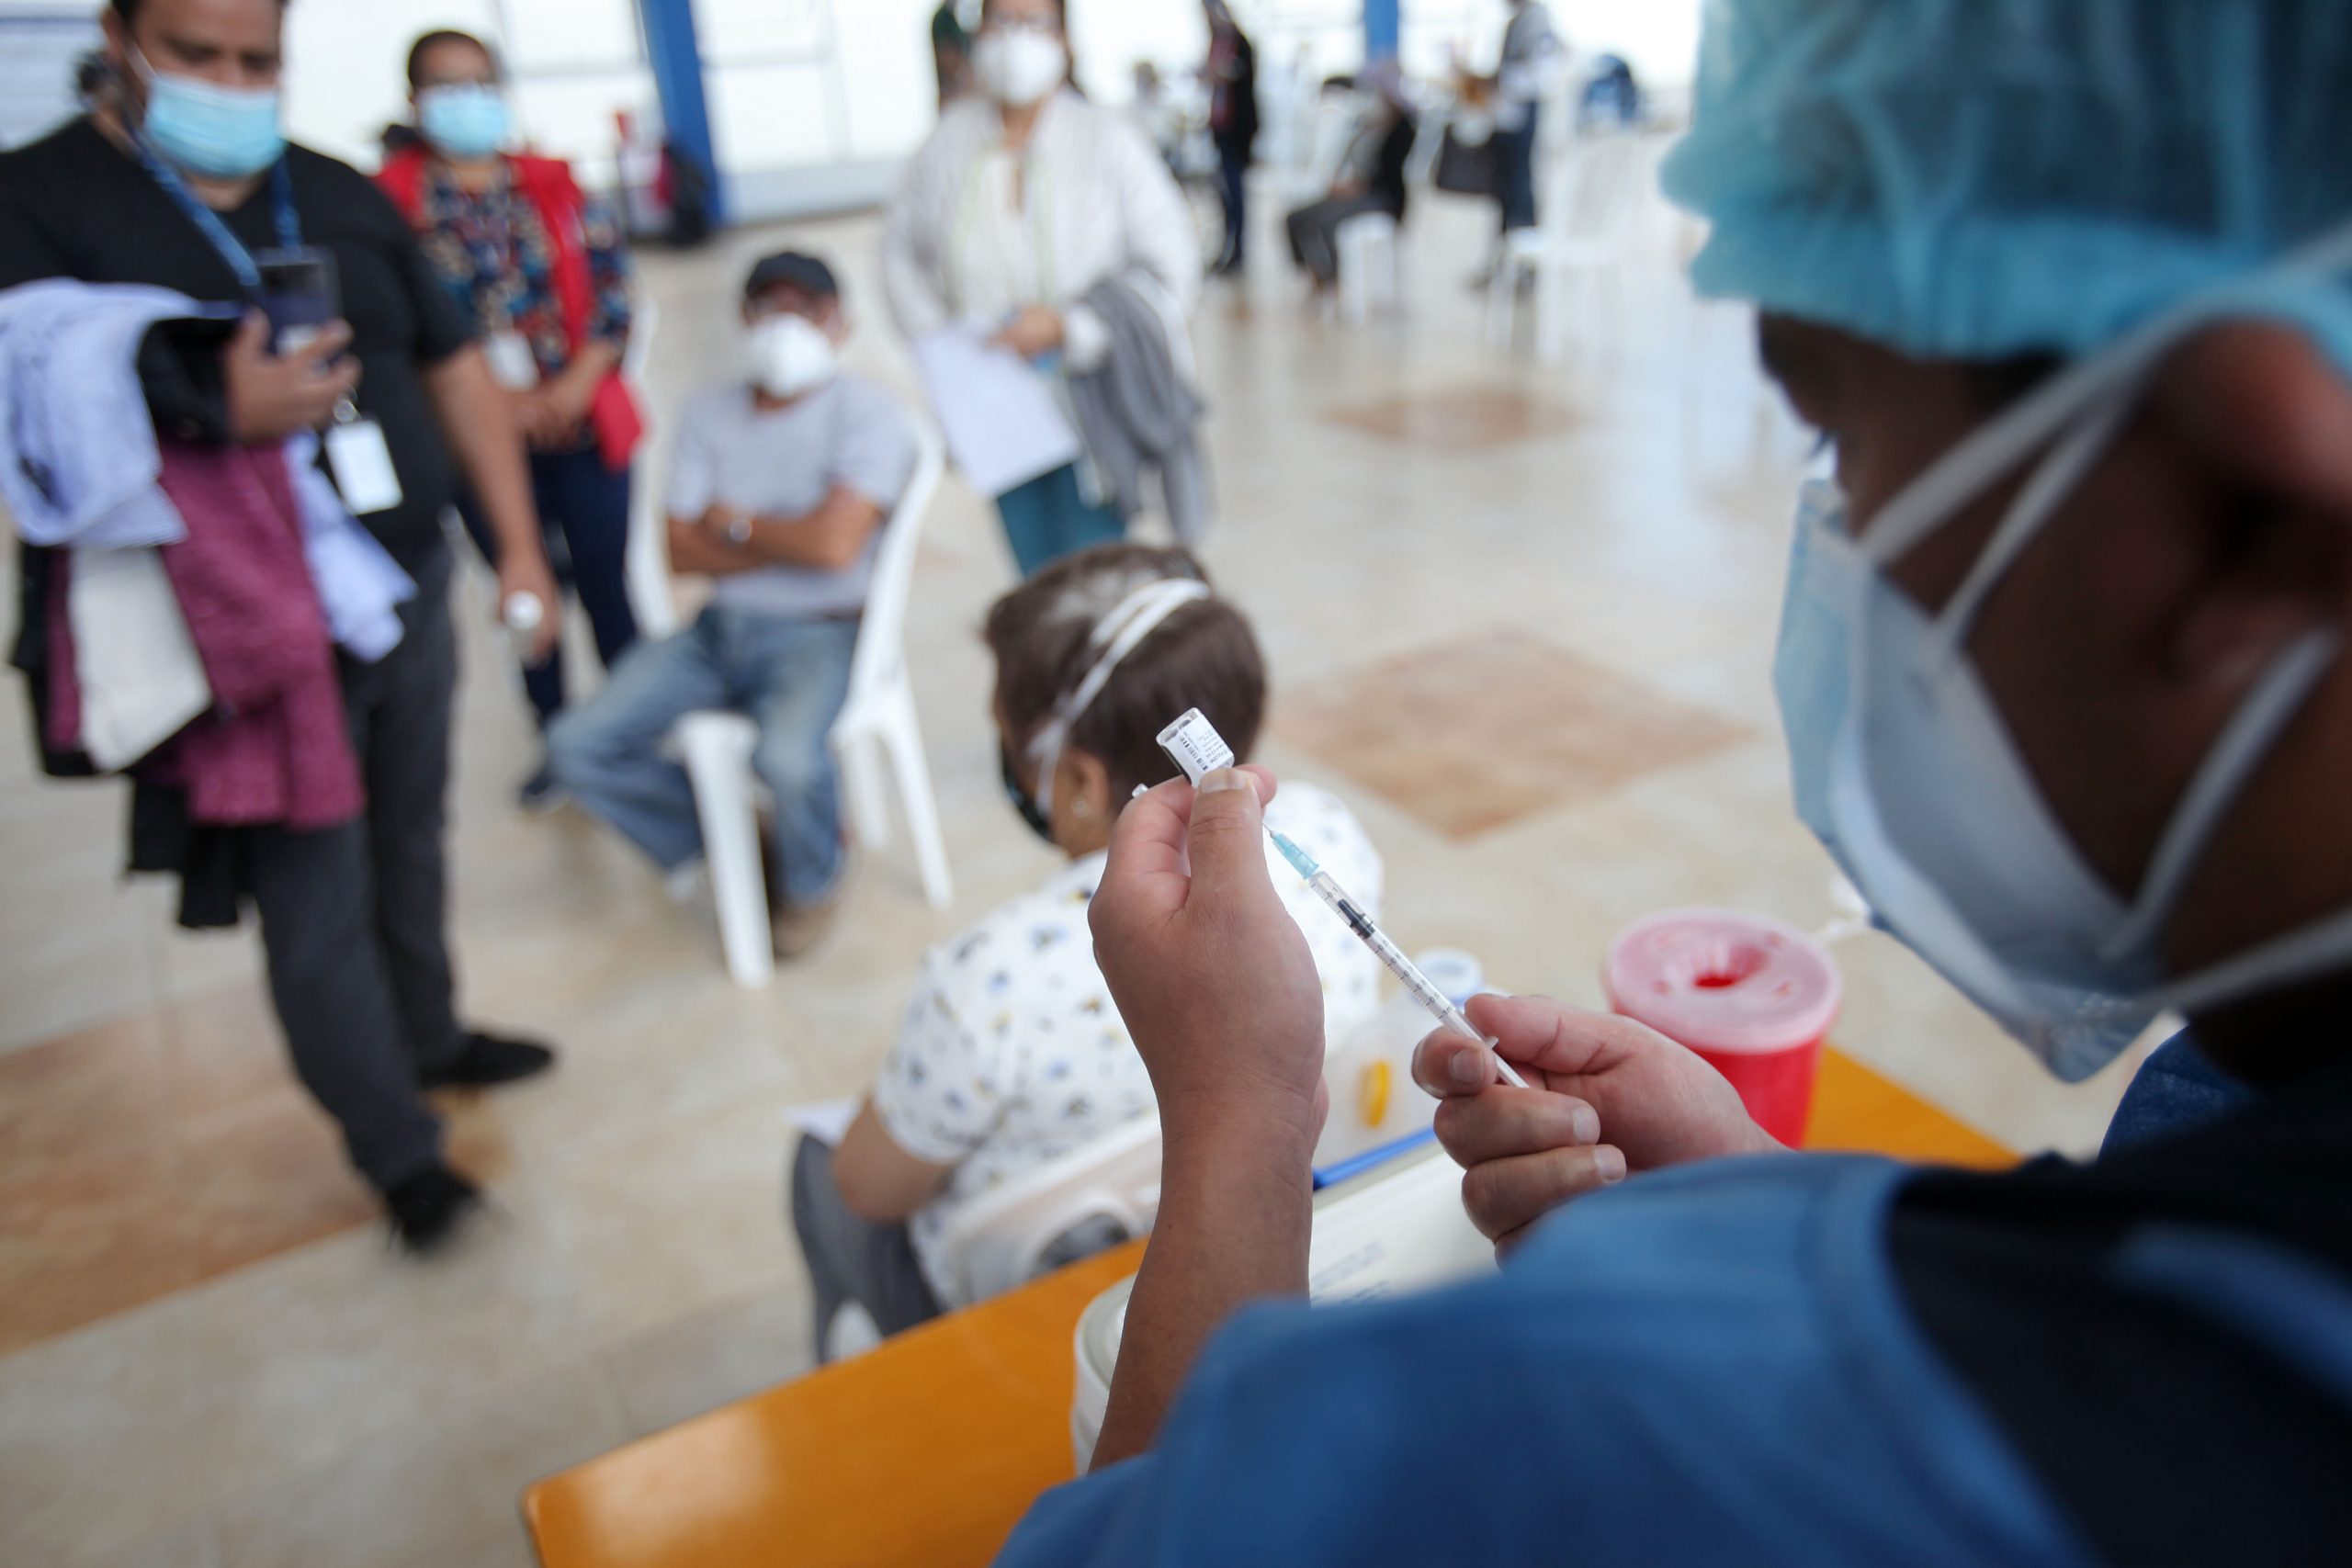 El personal médico preguntaba constantemente a los vacunados cómo se sienten. Foto: Julio Estrella / El Comercio